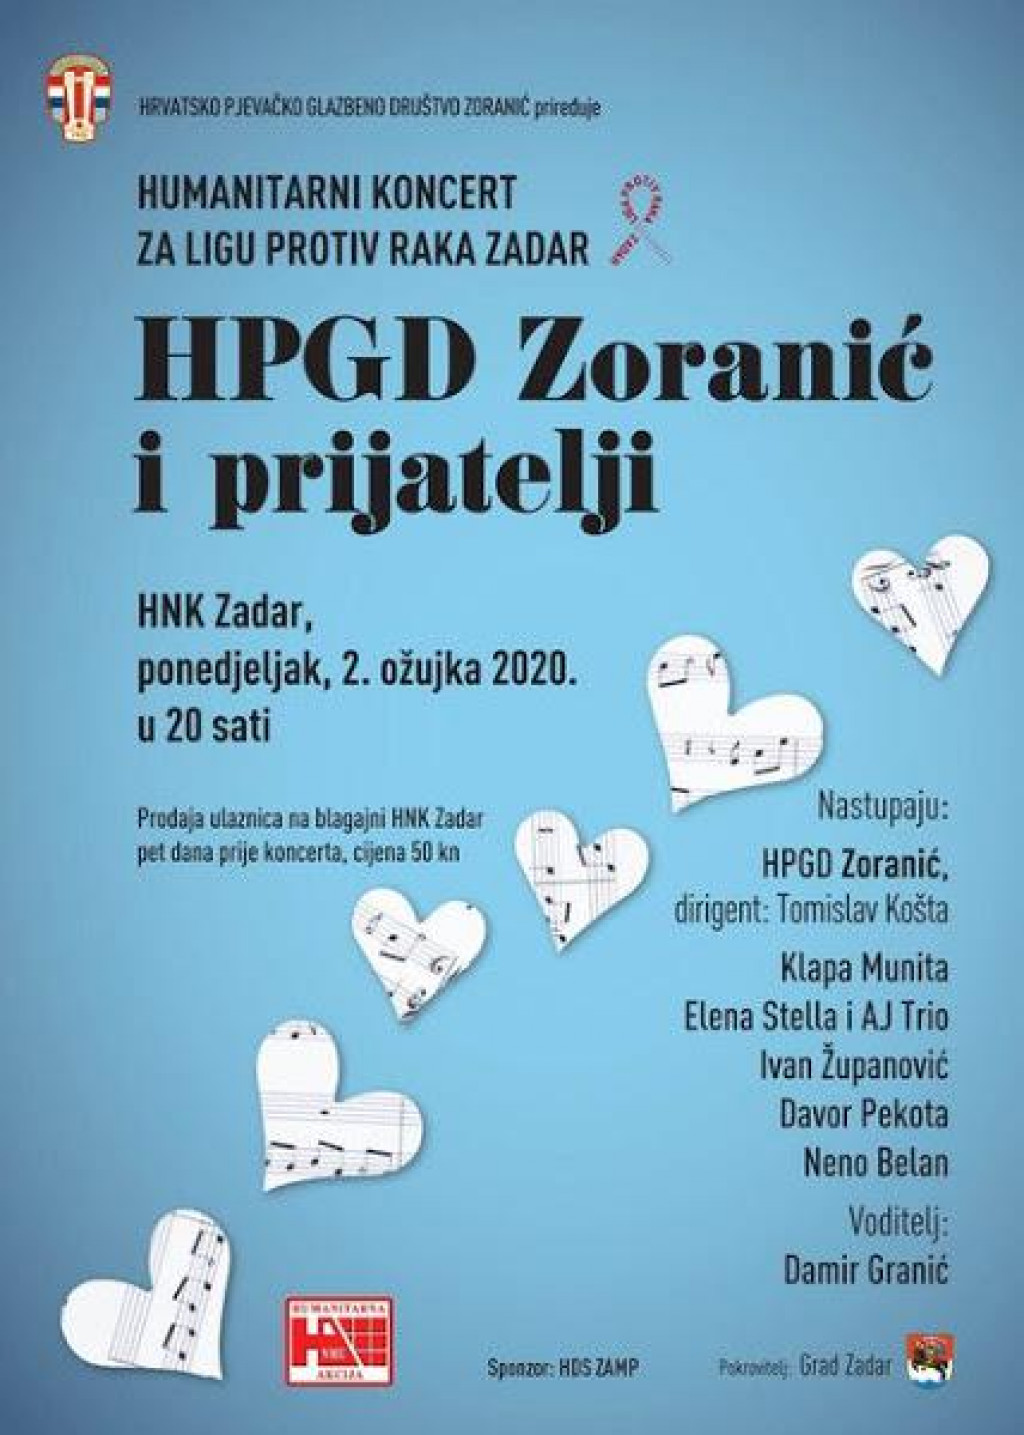 Zoranic organizira humanitarni koncert.